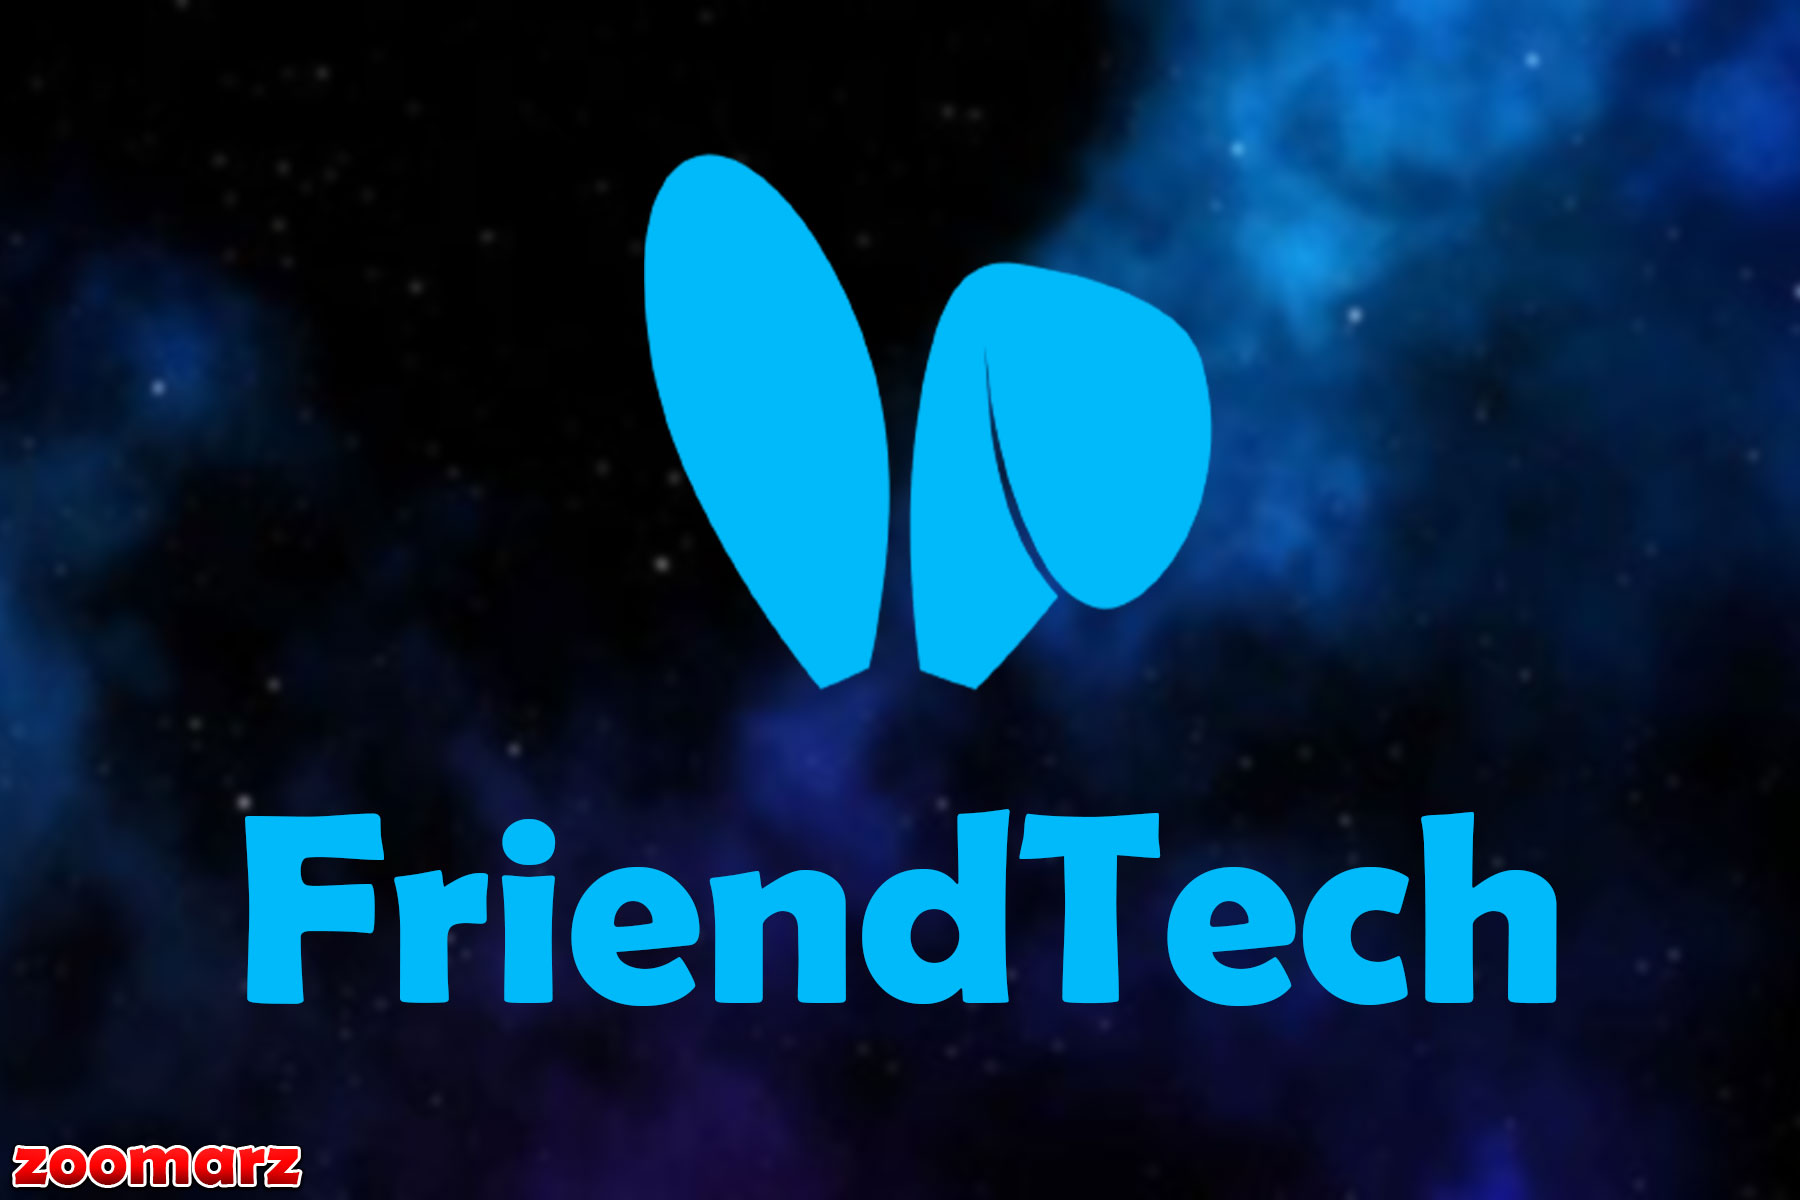 ۲۵ حساب برتر FriendTech در ۱۲ روز درآمد بالایی کسب می کنند: گزارش